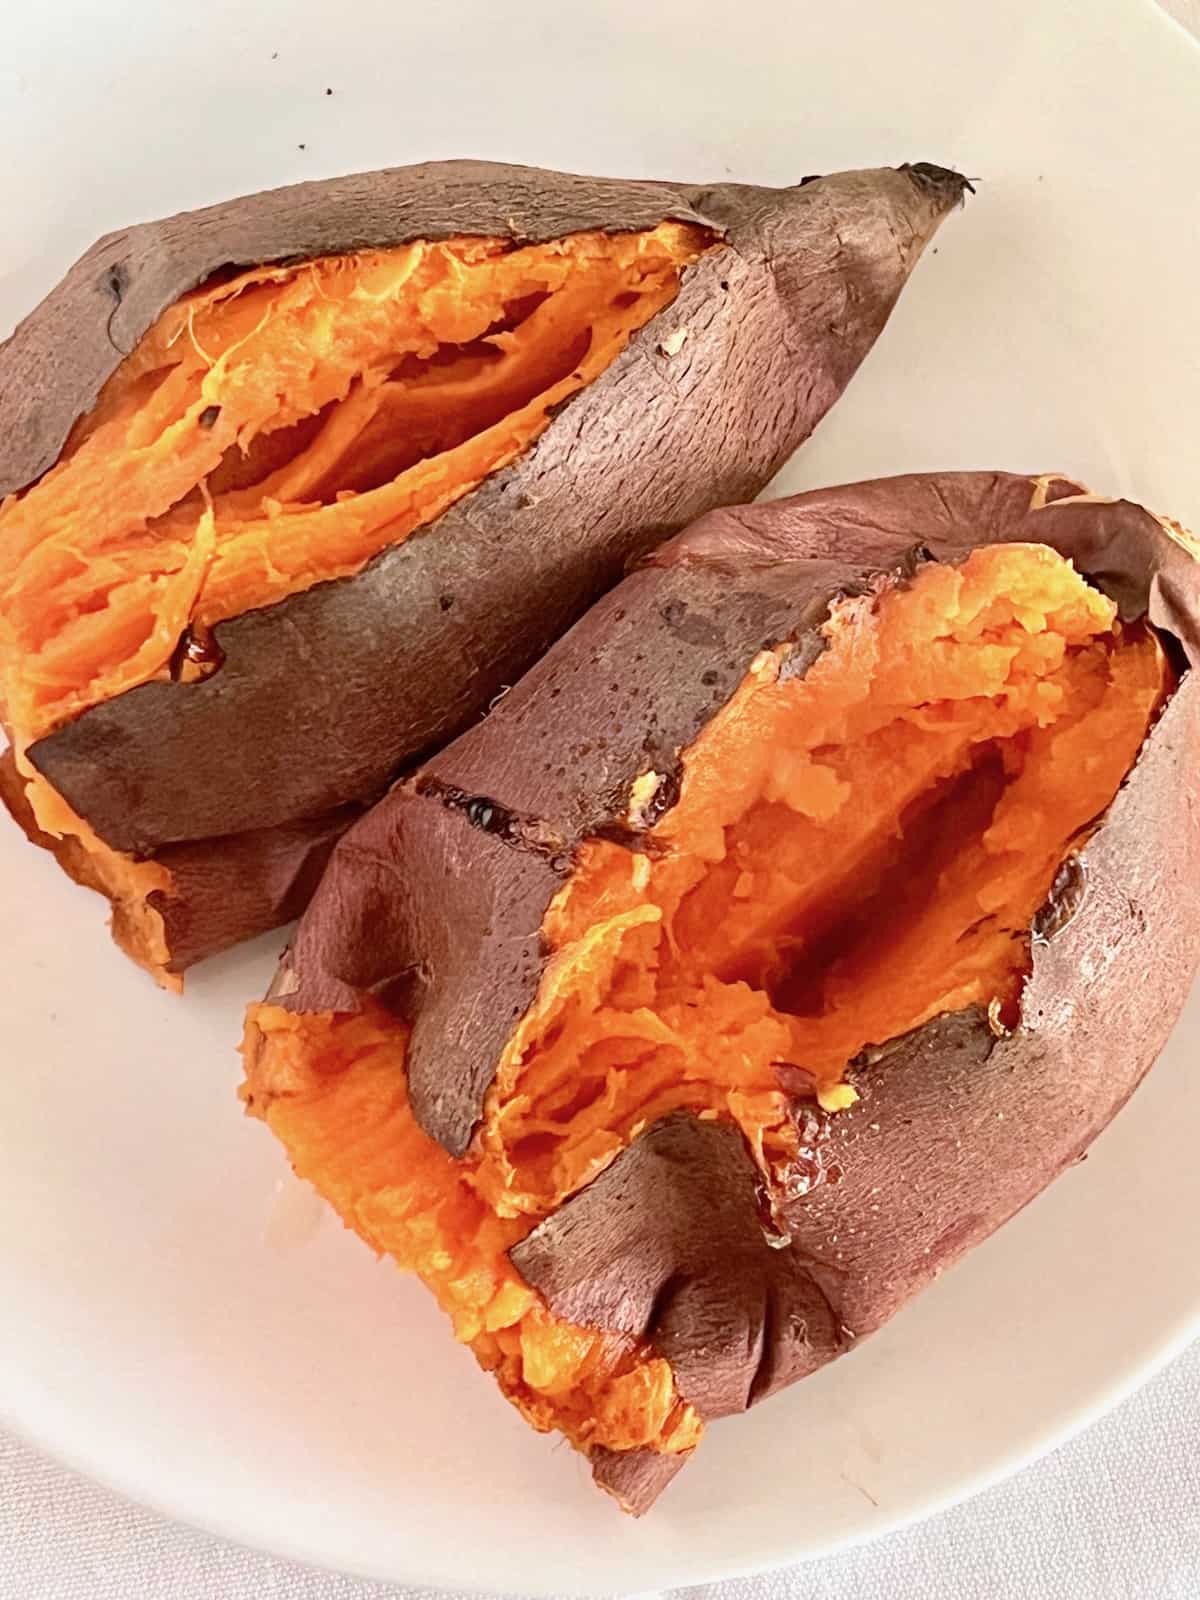 Baked sweet potatoes on a plate split open.